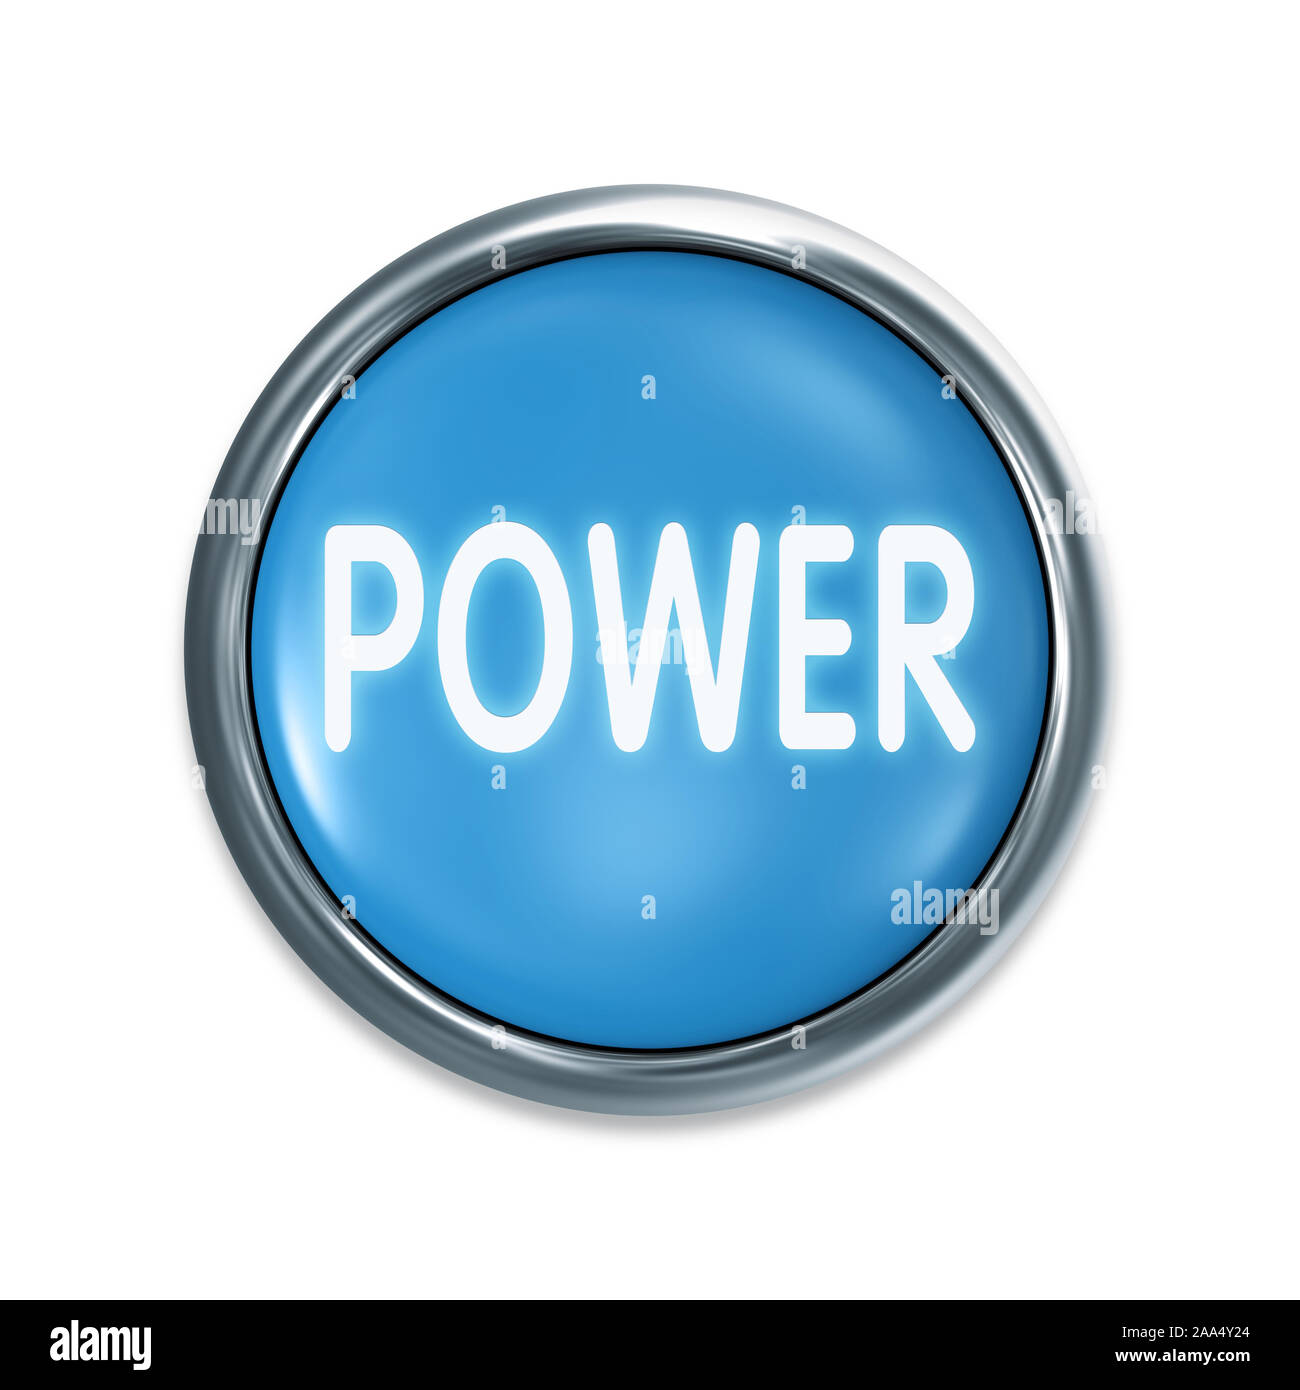 Ein blauer Startknopf vor weissem Hintergrund, Aufschrift: 'Power' Stock Photo